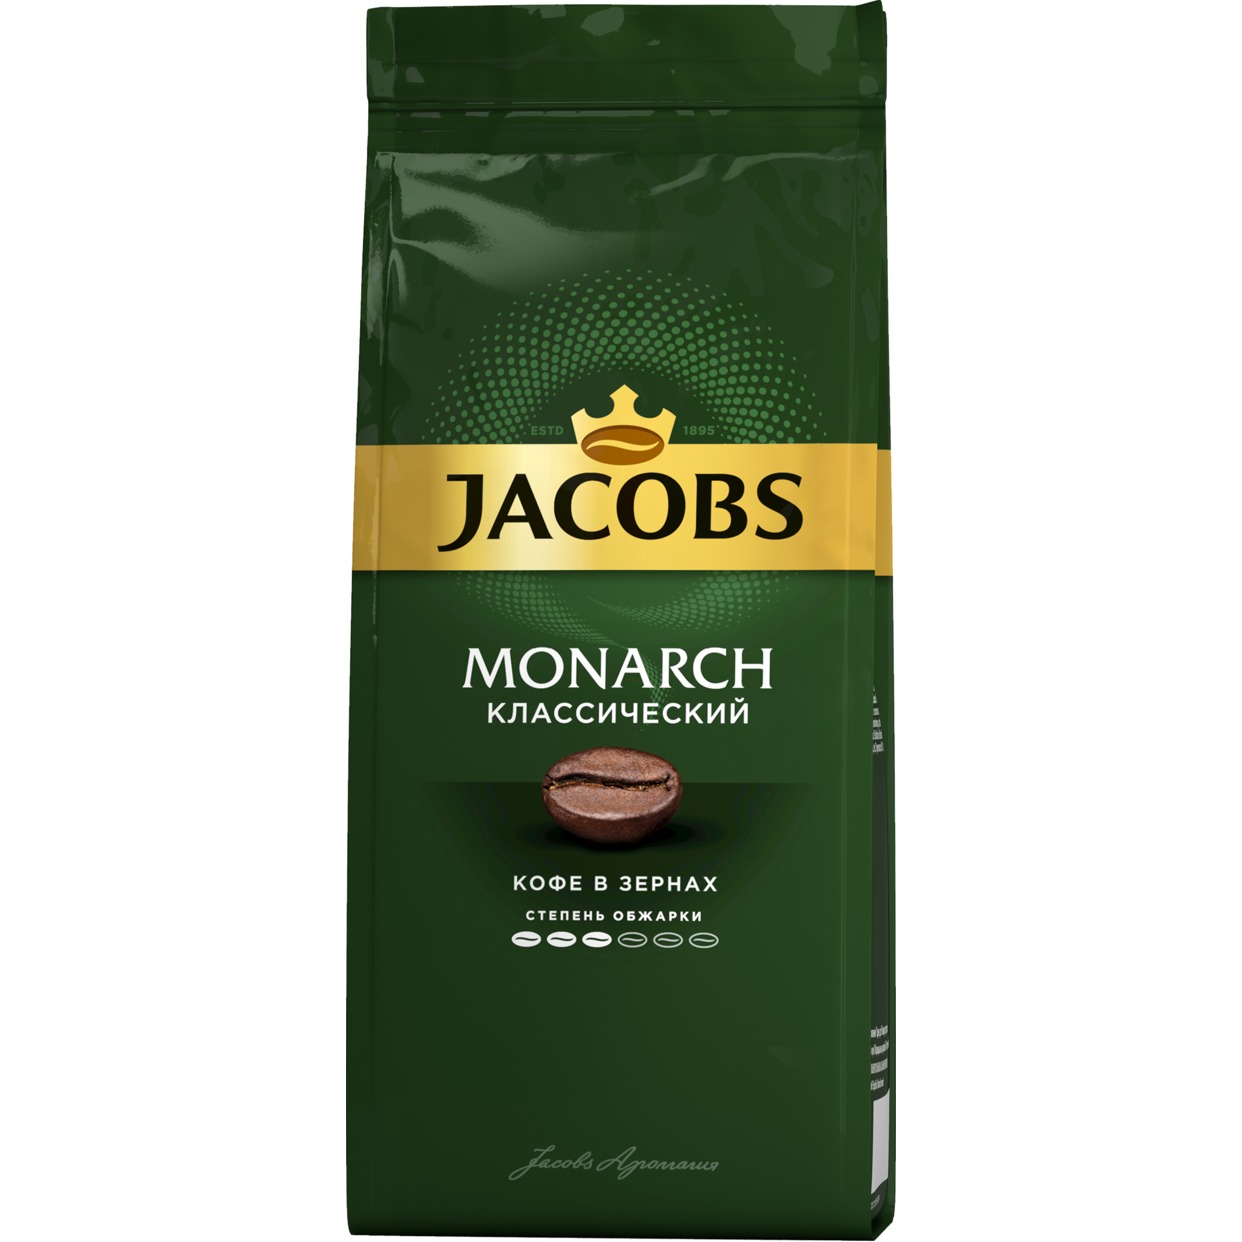 ЯКОБС МОНАРХ Классический кофе жареный зерна пакет 9х230 г